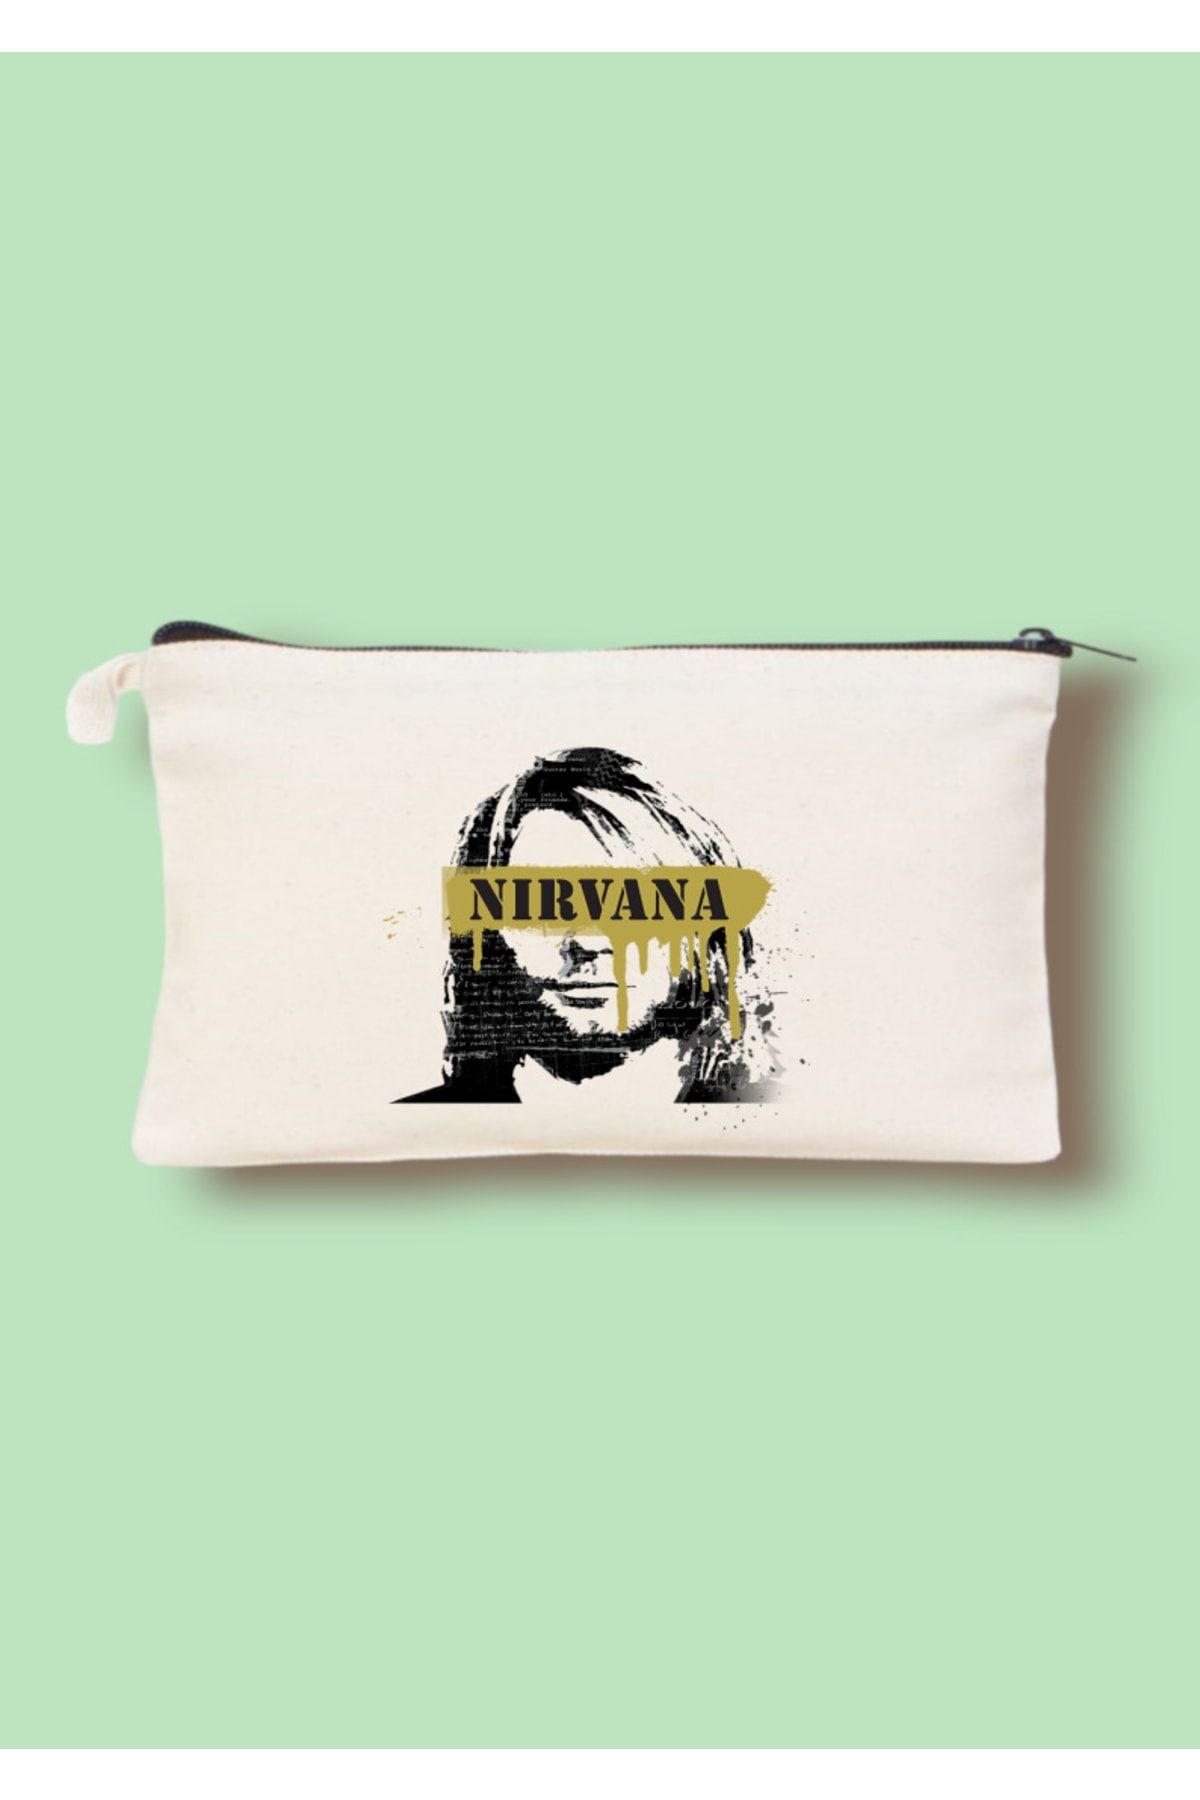 Cemira Nirvana Kurt Cobain Tasarımlı Clutch Çanta, Makyaj Çantası, Kalem Kutusu, Kalemlik 12-18